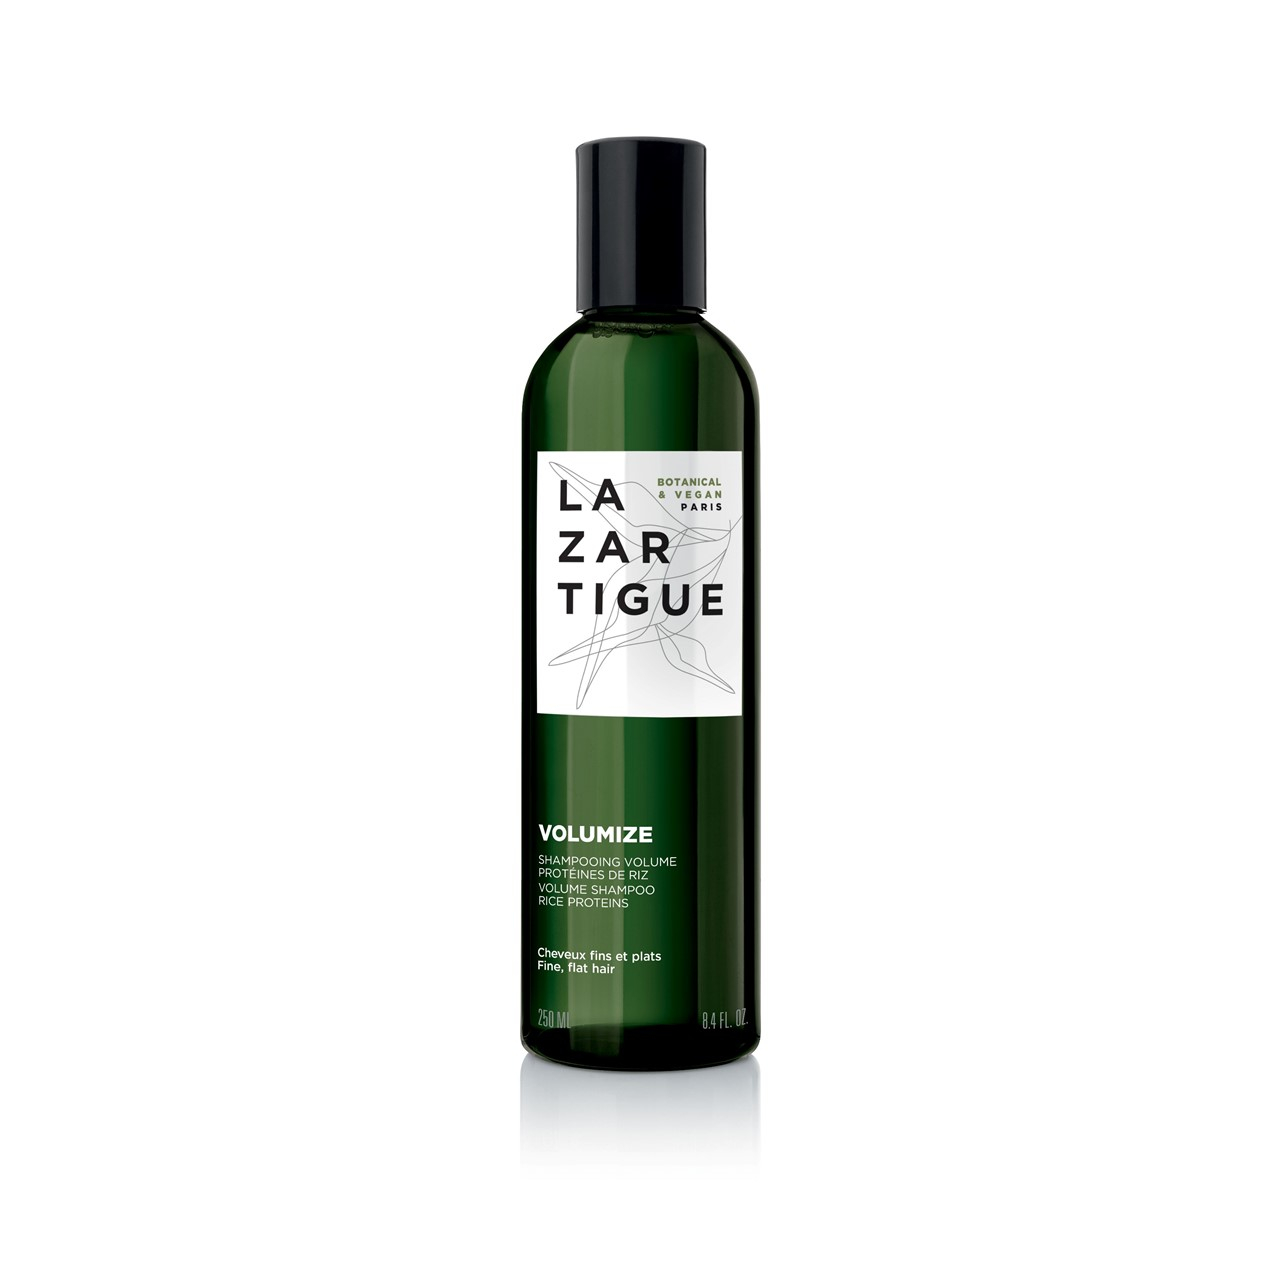 Lazartigue Volumize Volume Shampoo 250ml (8.45fl oz)